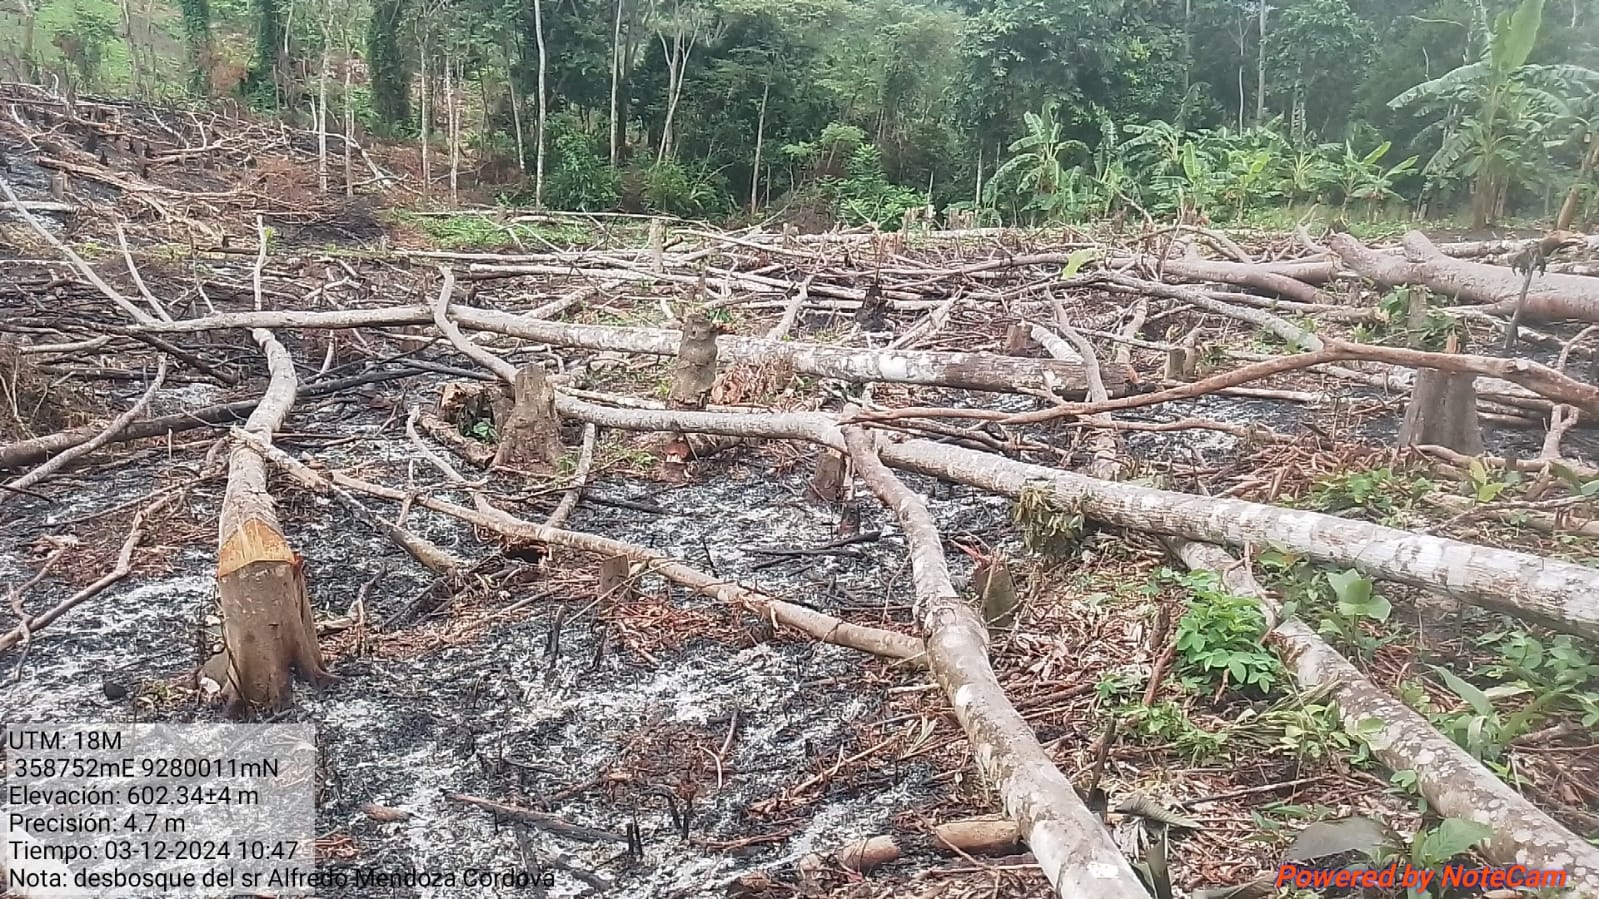 Amparados en la Nueva Ley Forestal Luz verde a la deforestación1